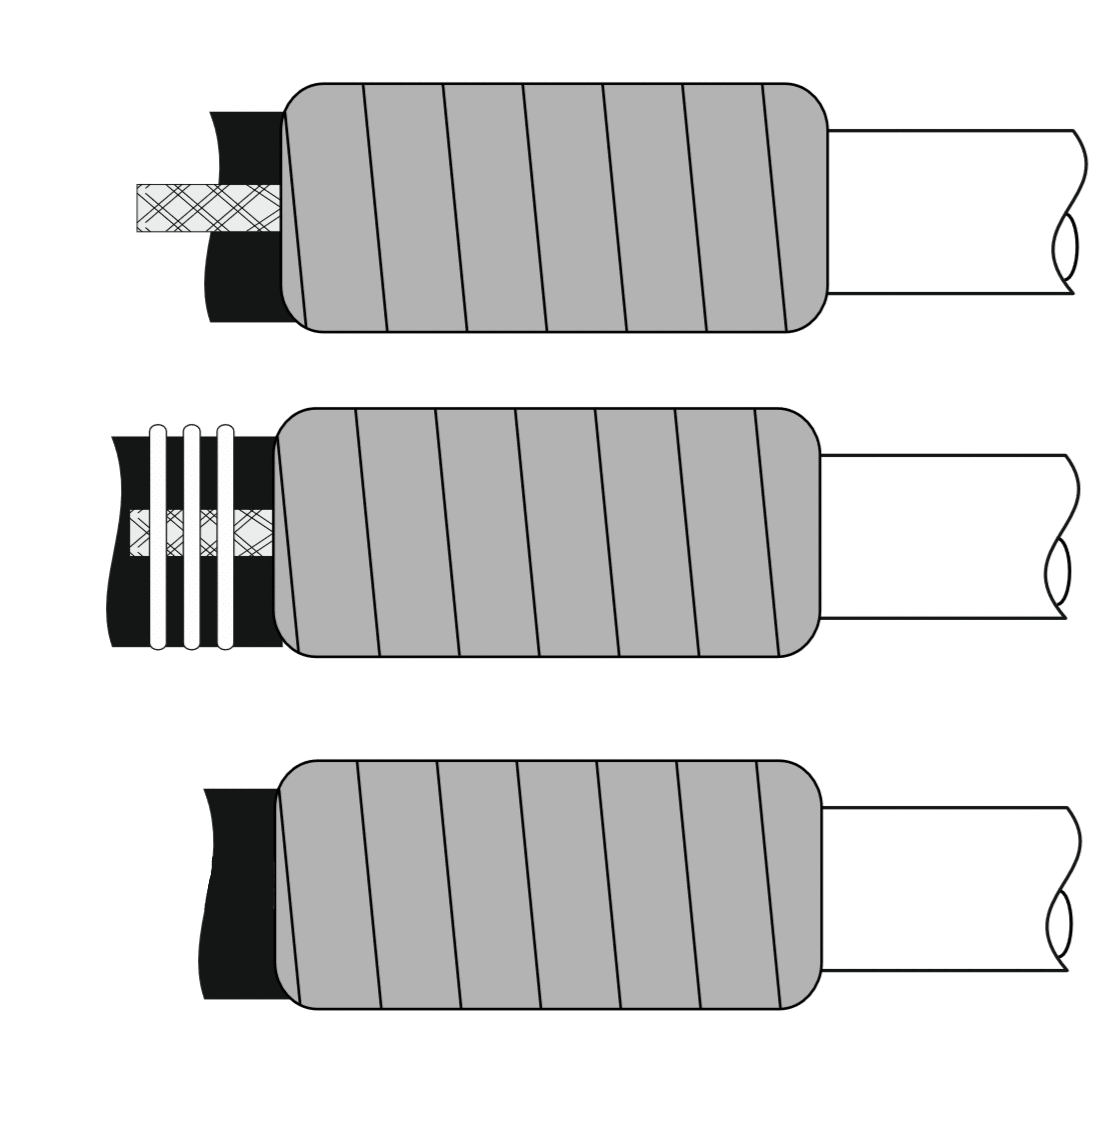 Инструкция по монтажу концевой термоусаживаемой муфты на кабель напряжением до 1 кВ в пластмассовой изоляции